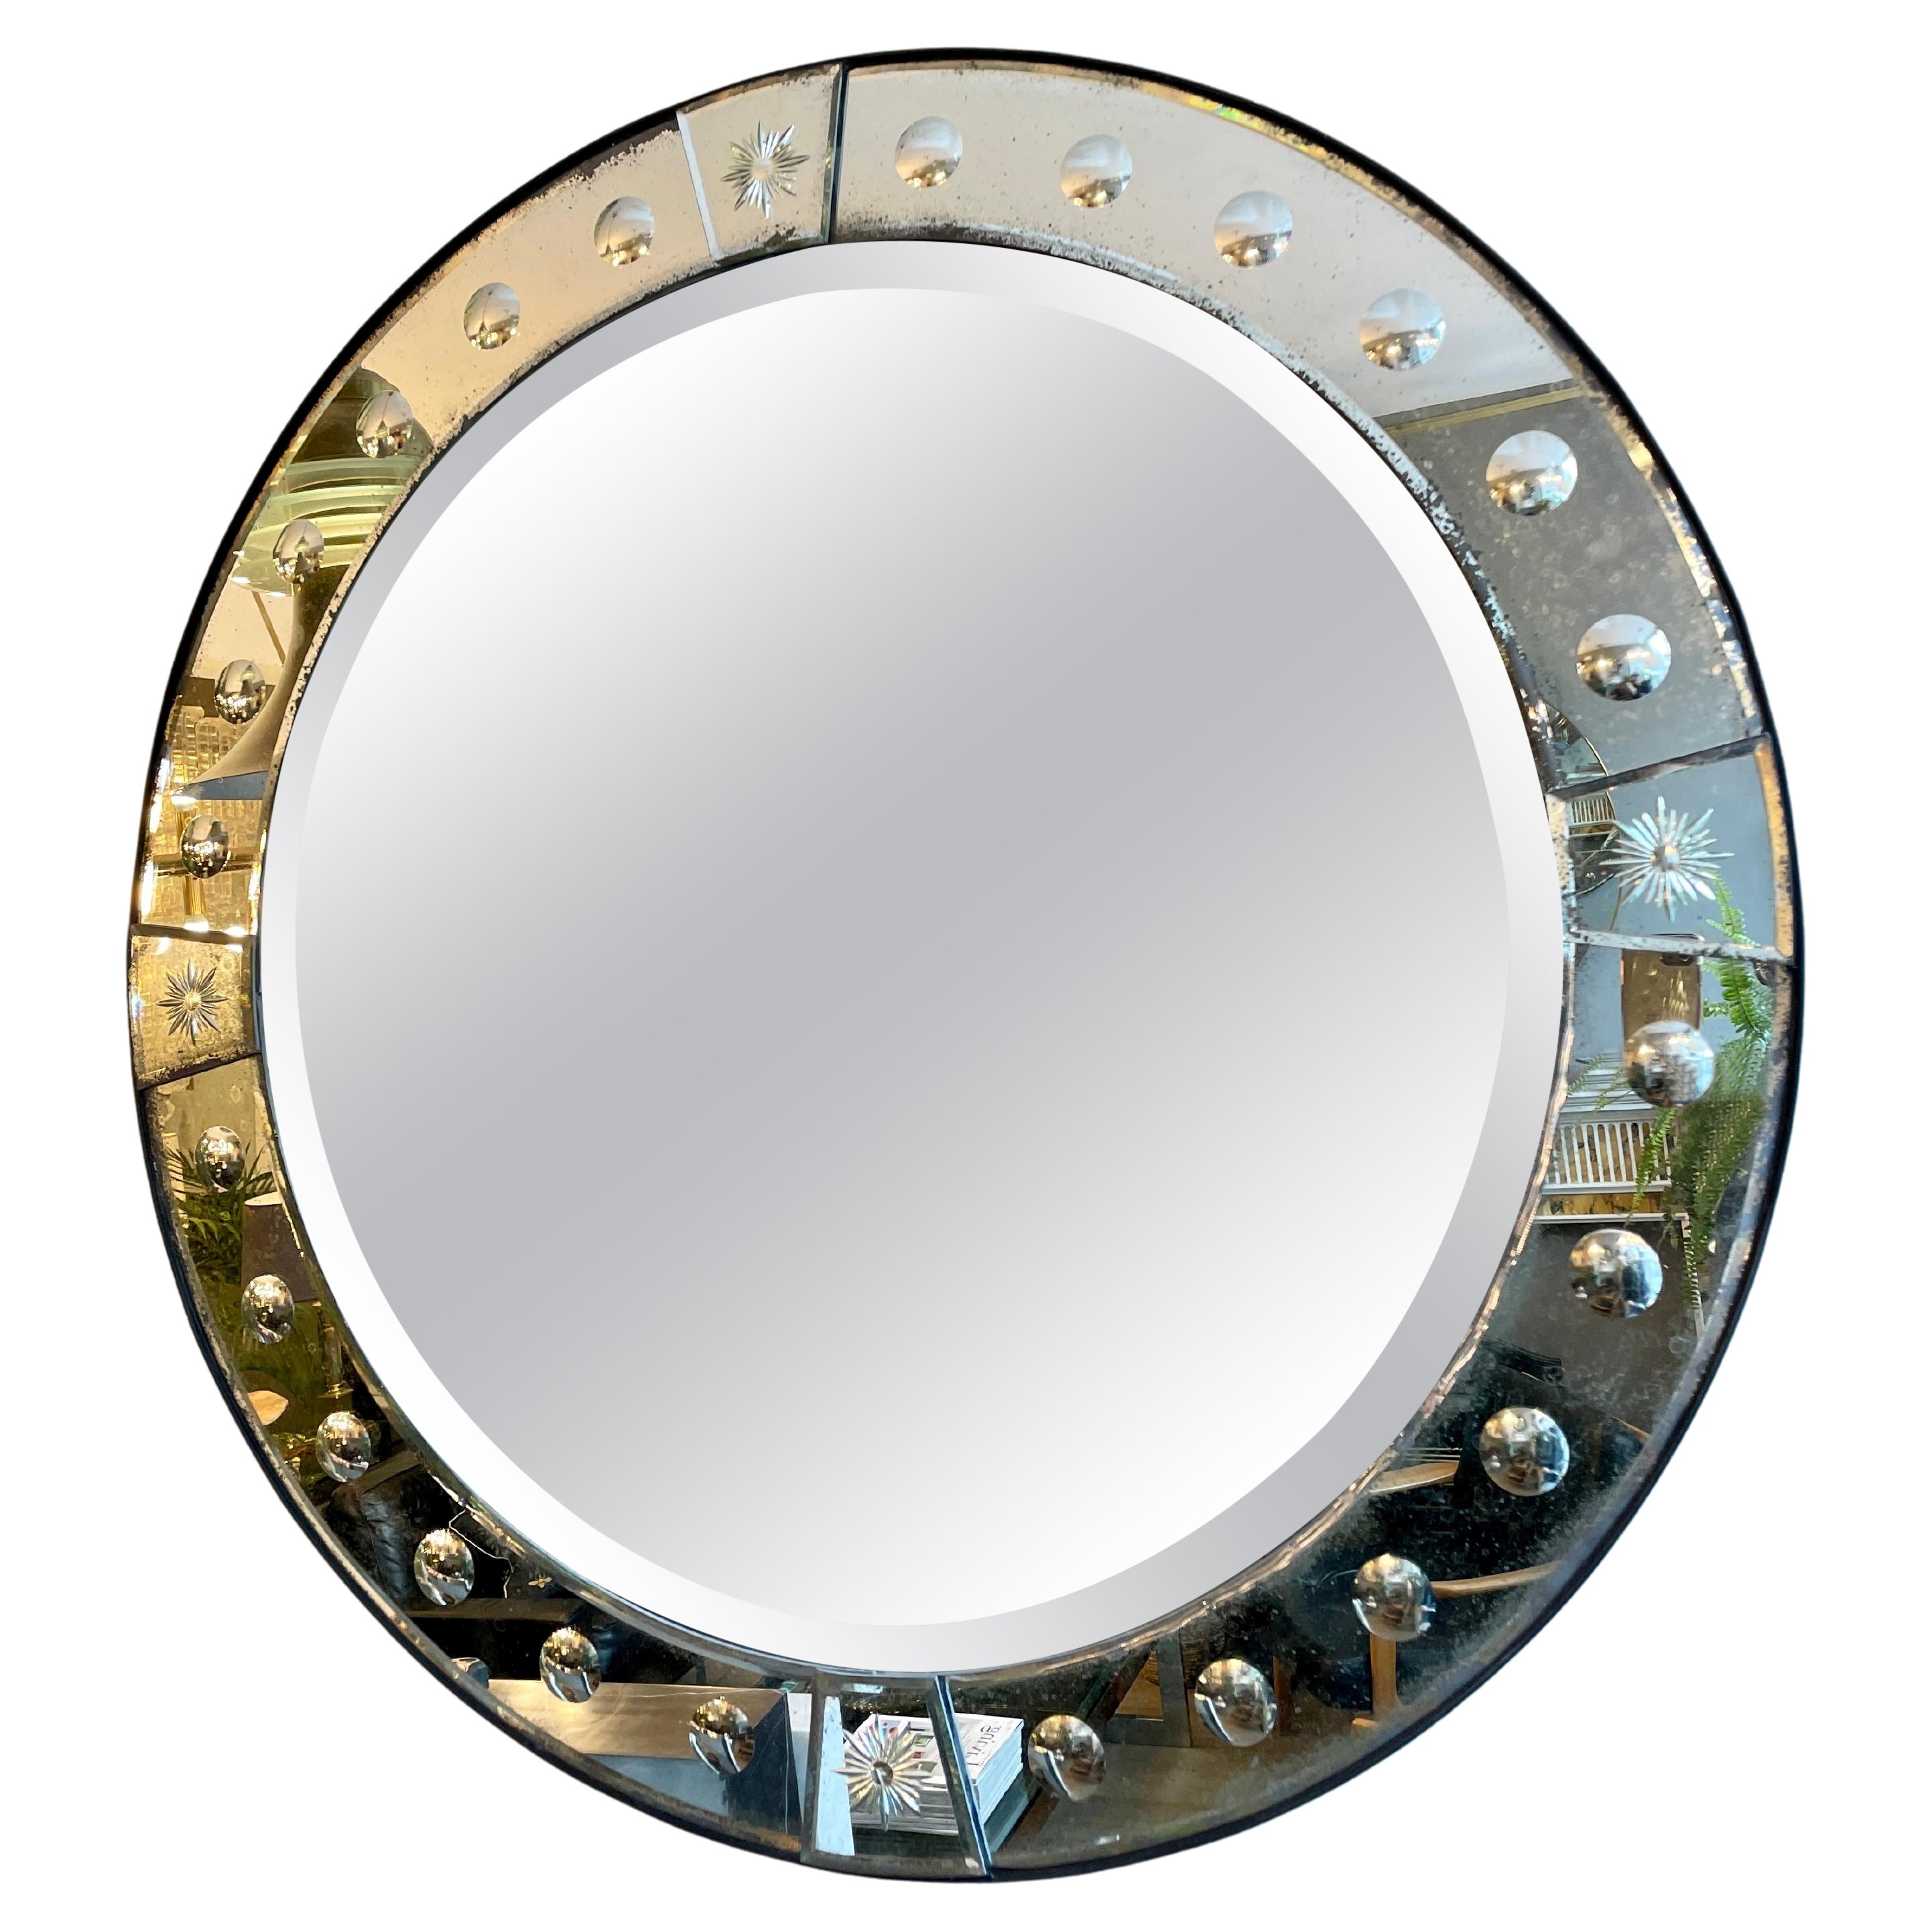 Un miroir circulaire avec une bordure de miroir à panneaux en tôle légèrement vieillie, monté sur du bois qui a un bord en bande d'acier ébénisé. Décorée de verres circulaires gravés et biseautés.